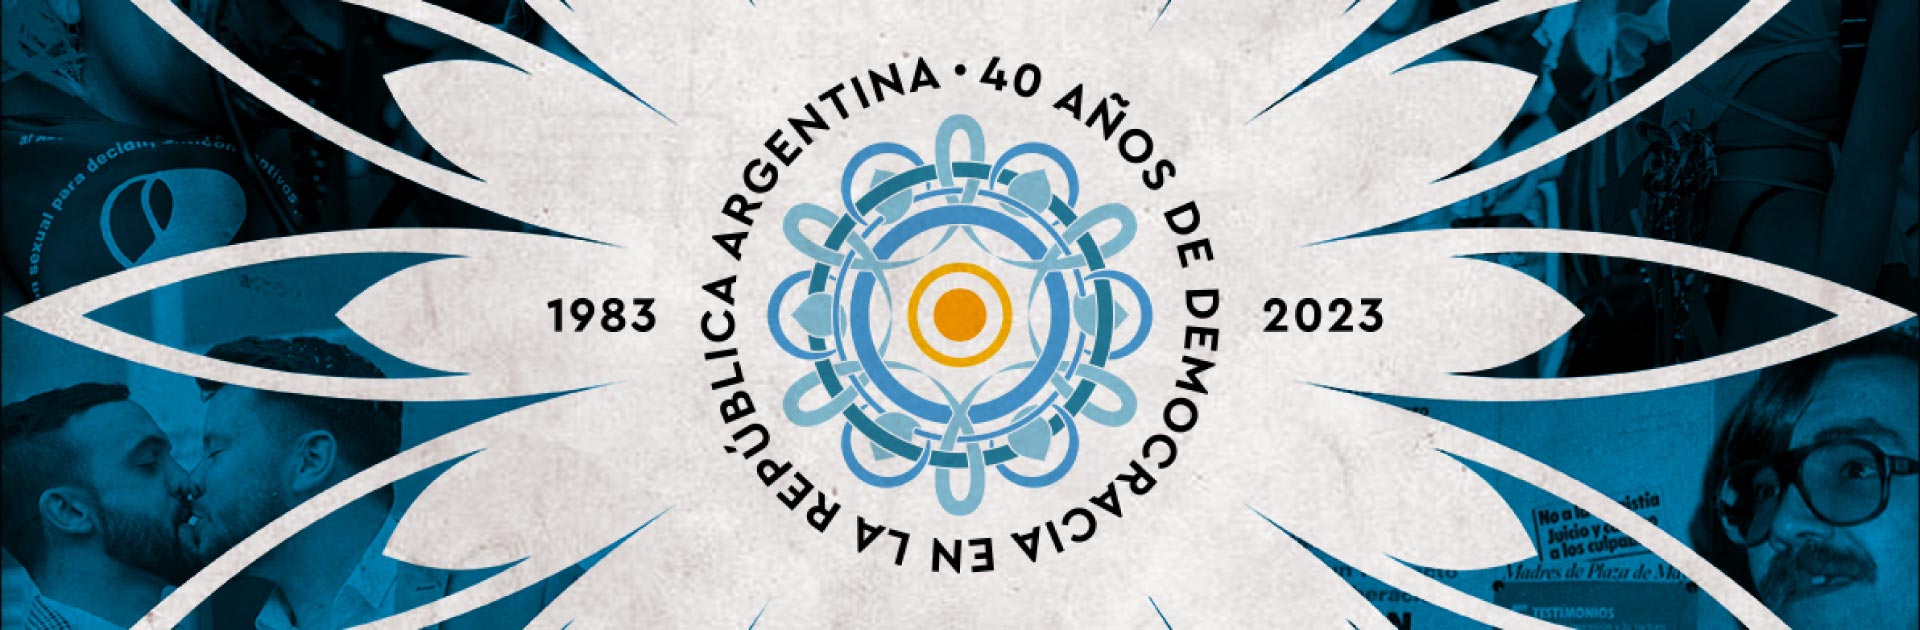 40 años de democracia en Argentina